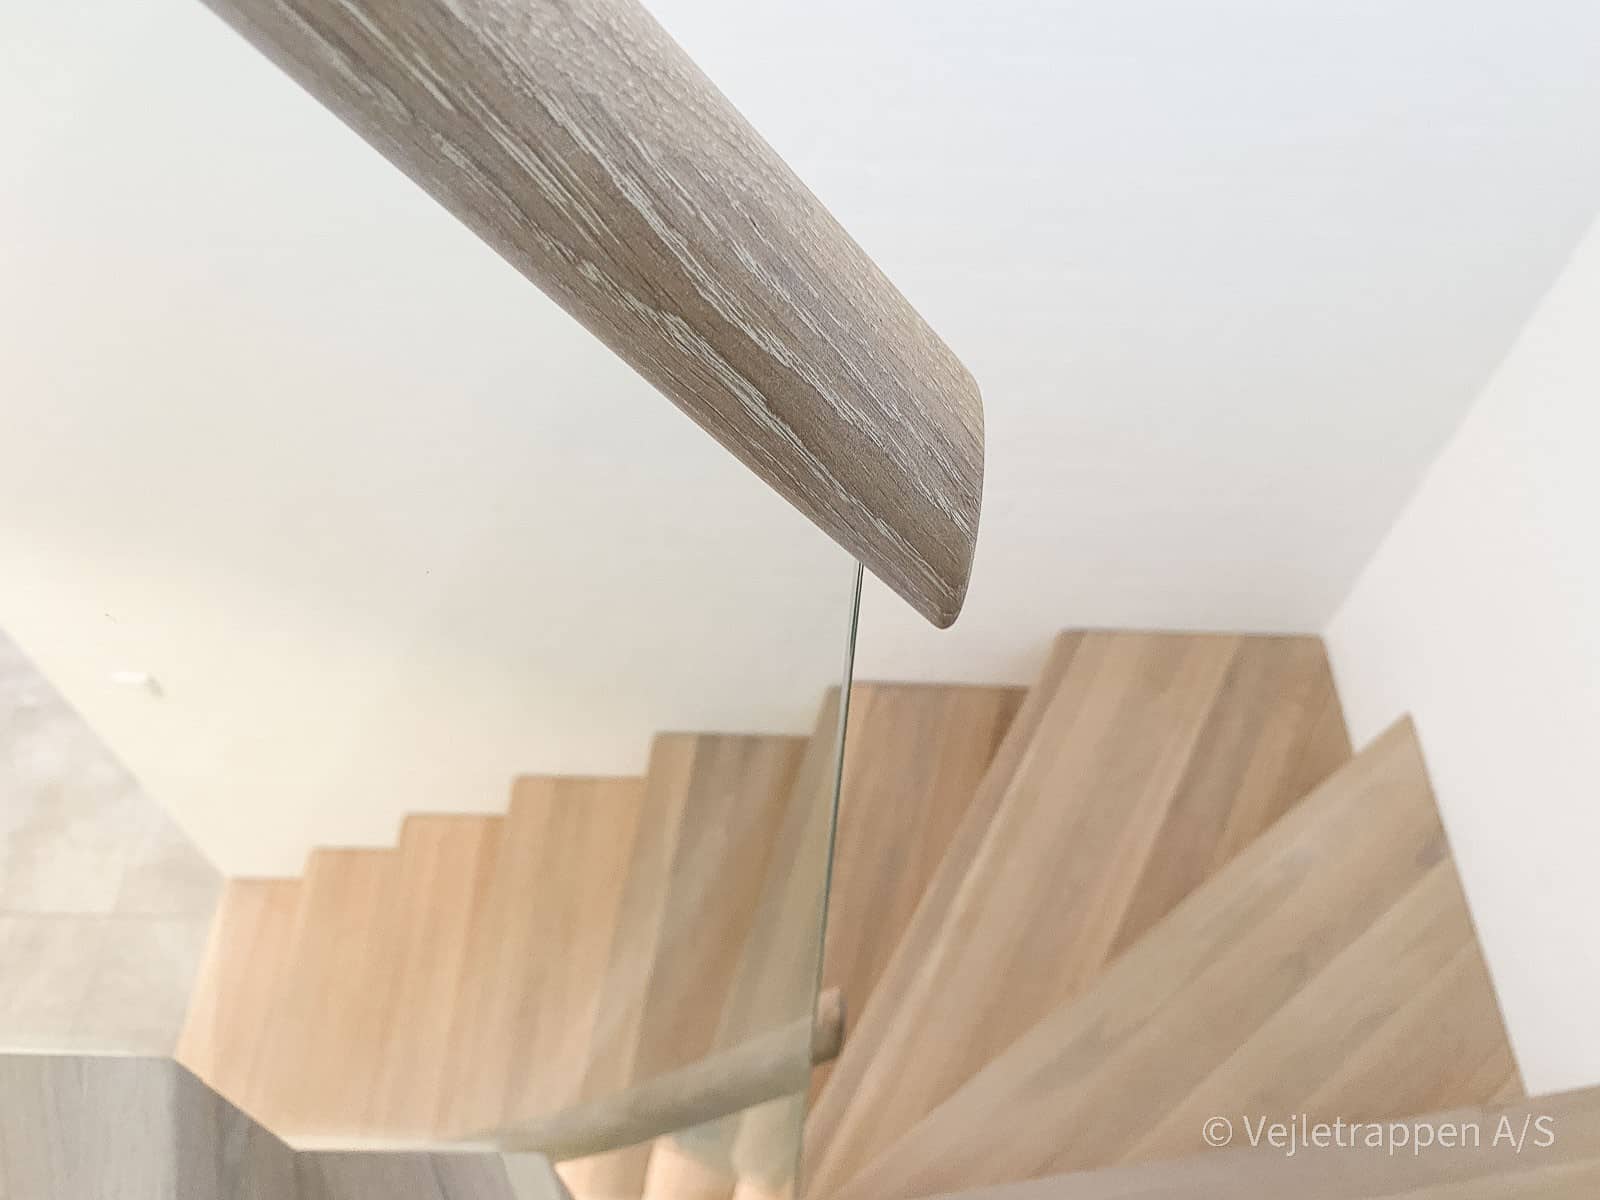 Trætrappe fra Vejletrappen. Halvsvingstrappe i eg, udformet som en musetrappe med glasgelænder, monteret med trappebelysning.